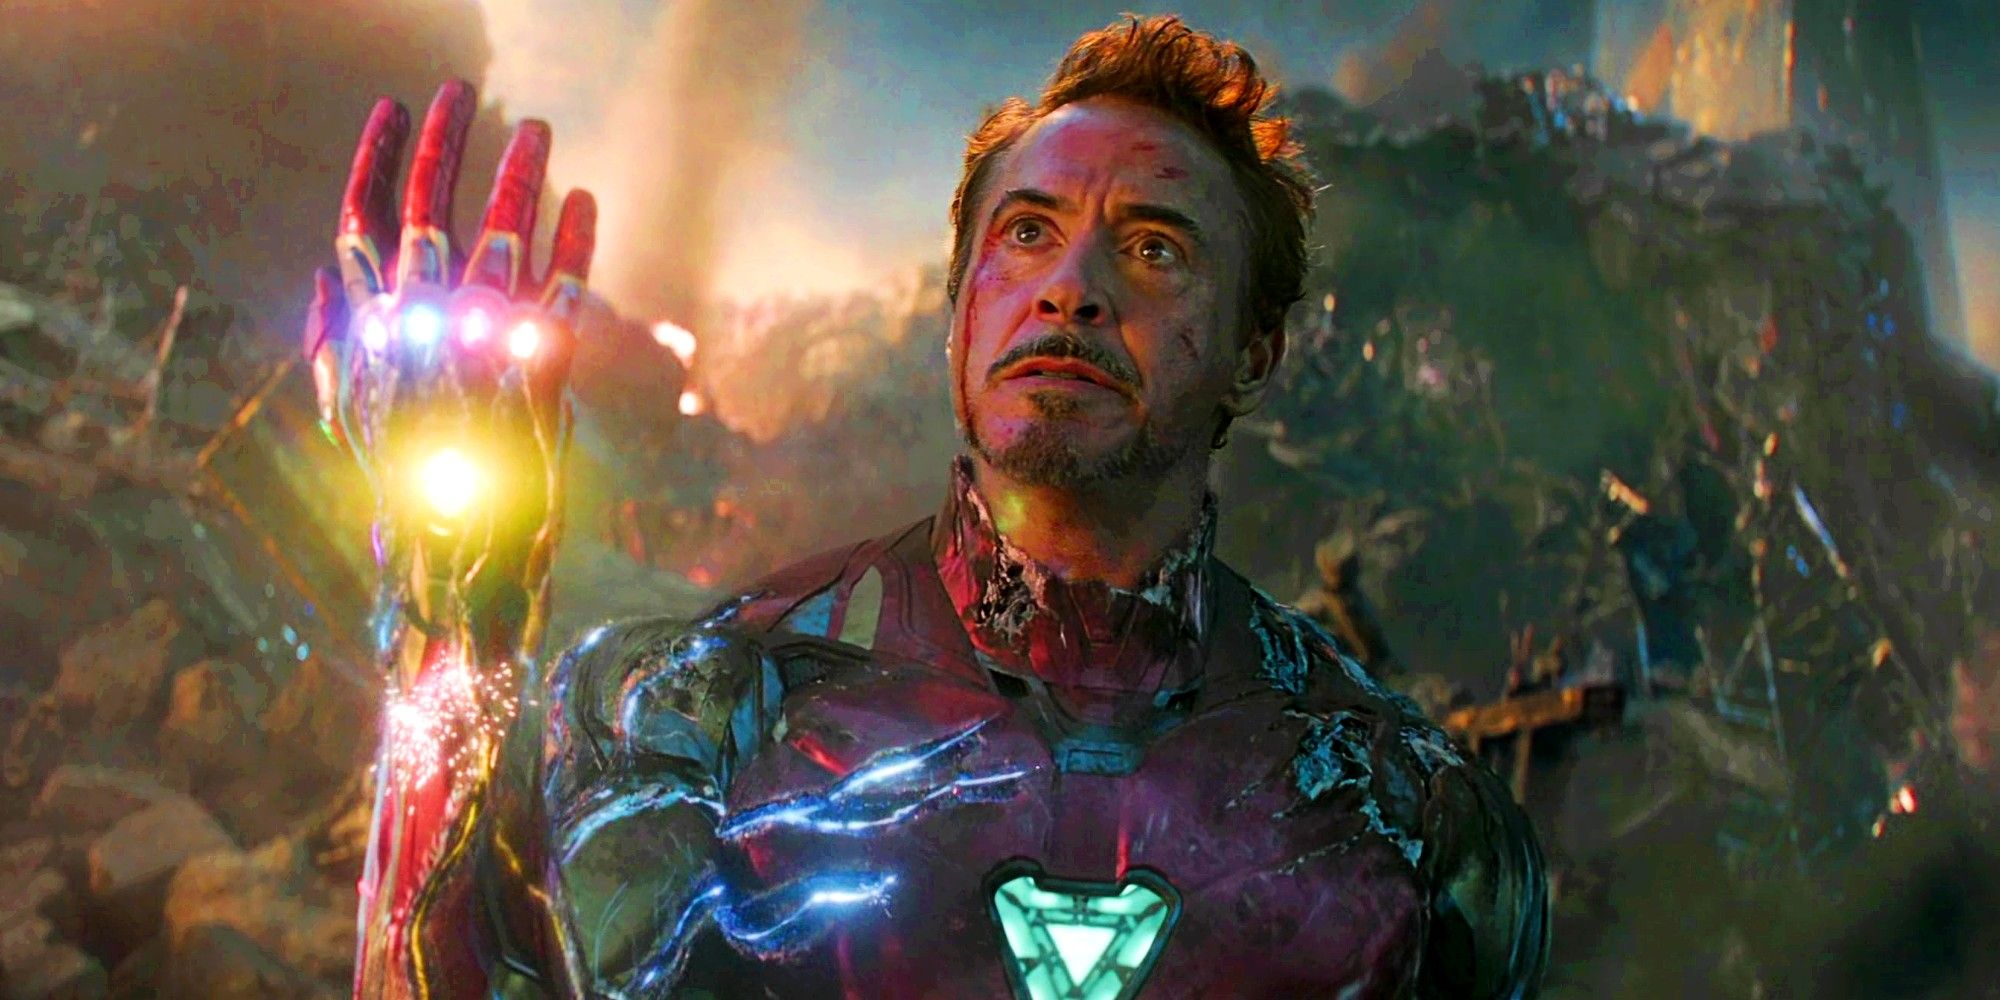 Robert Downey Jr as Tony Stark Iron Man in Avengers Endgame